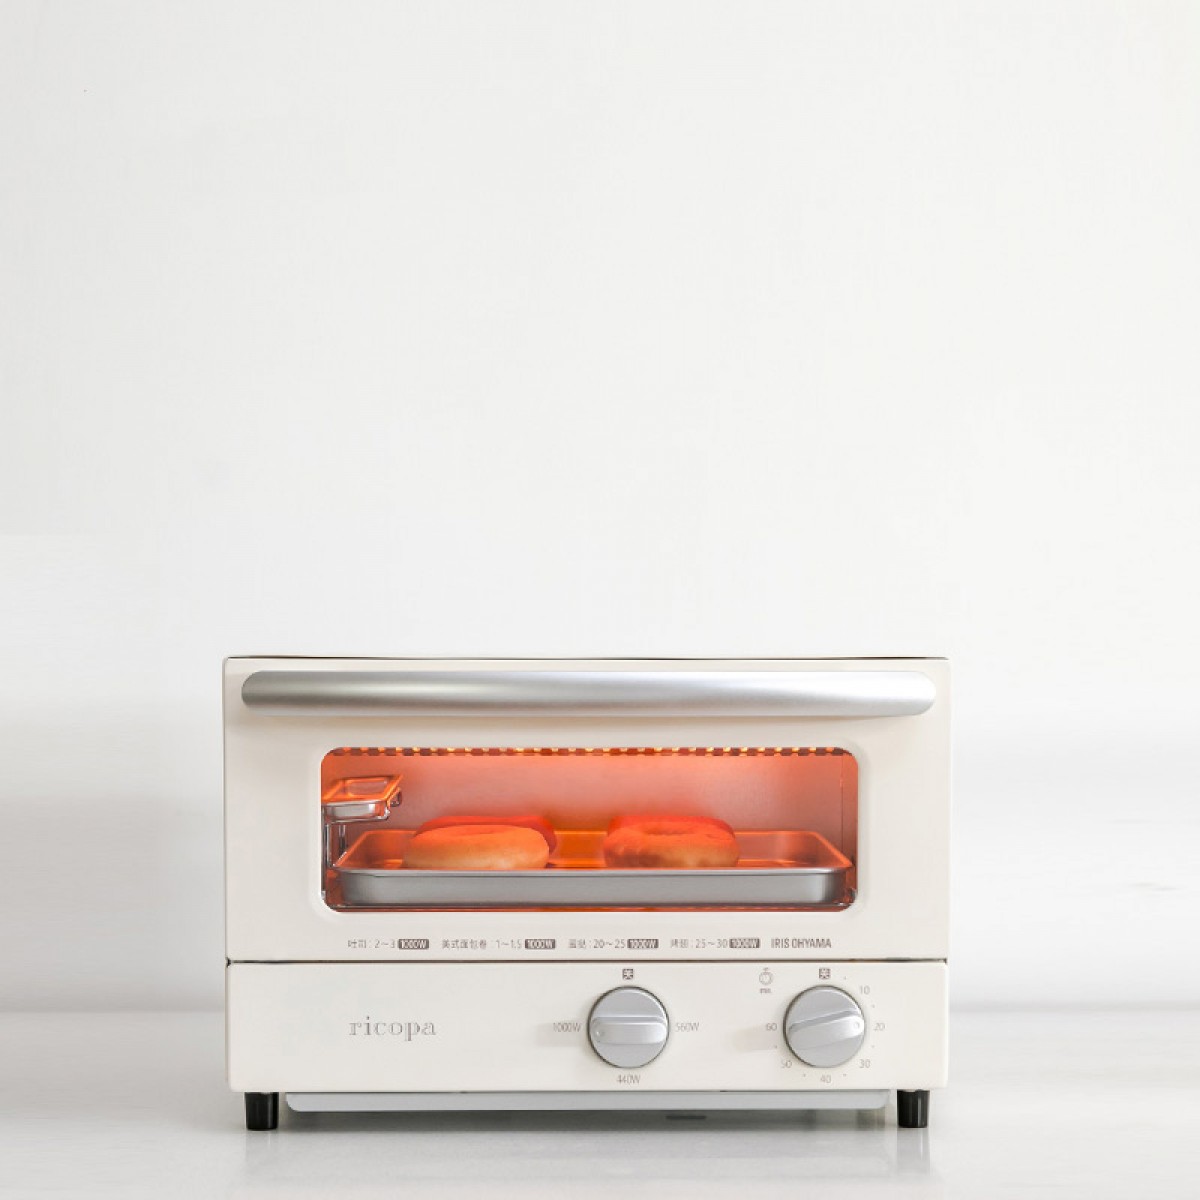 日本IRIS愛麗思絲ricopa烘焙小型烤箱